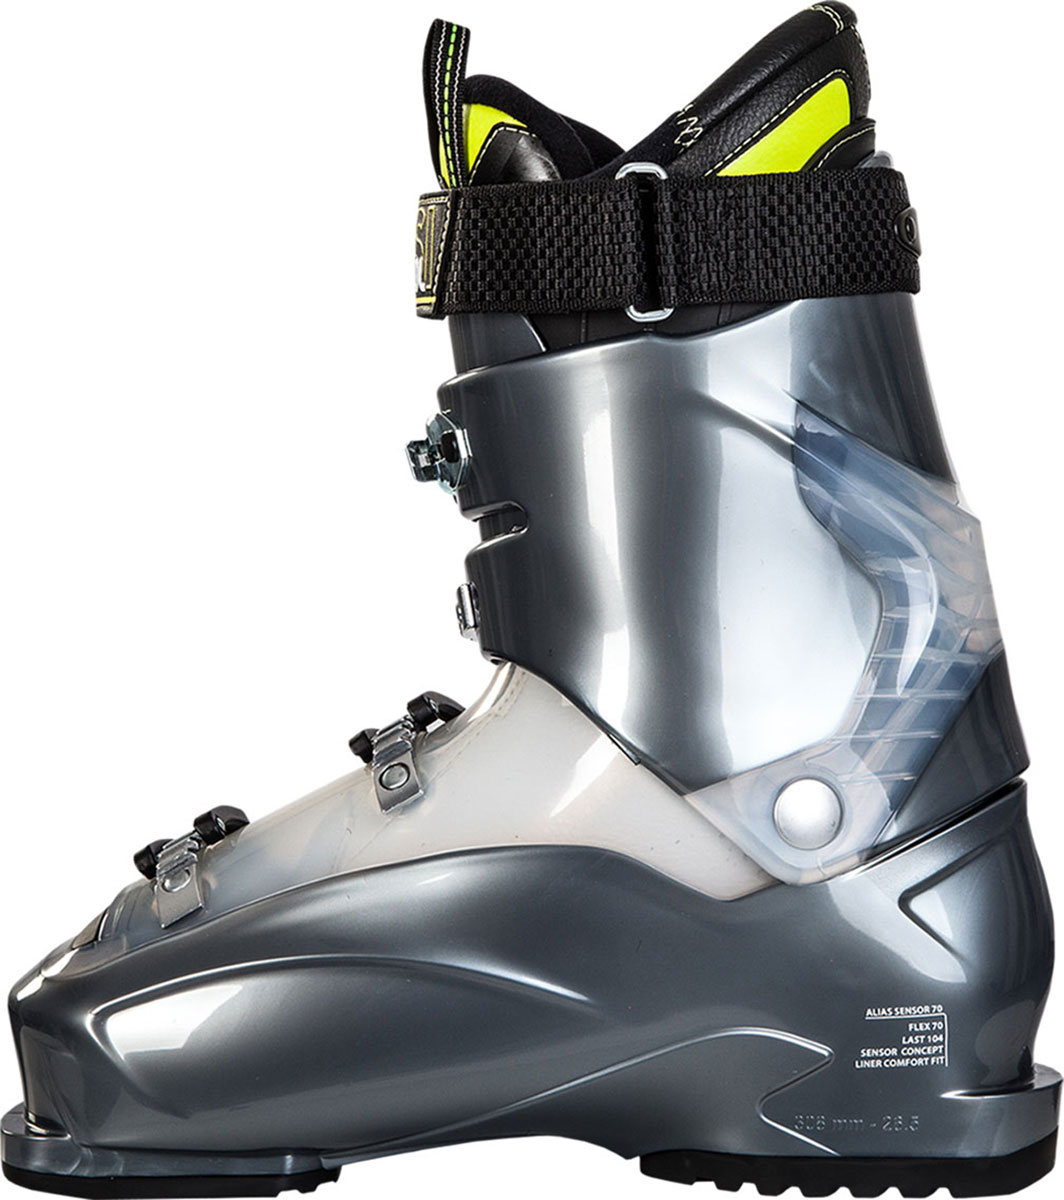 Men's ski boots